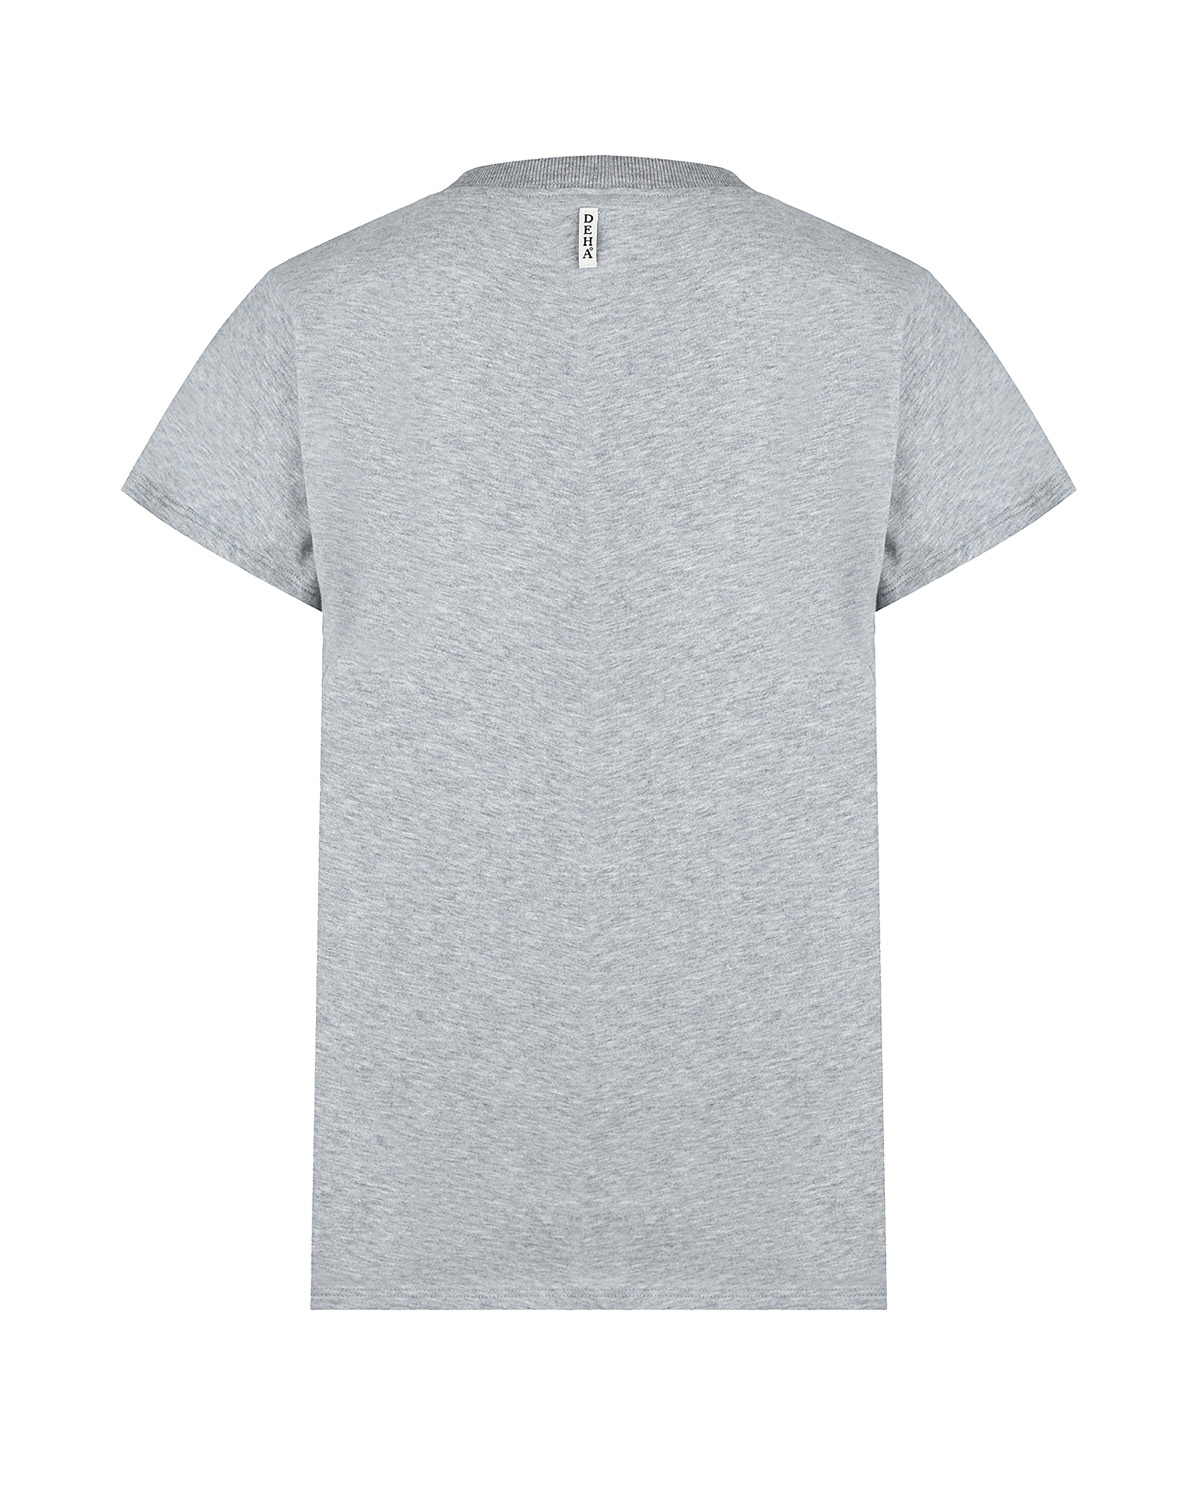 Серая футболка с леопардовым принтом Deha, размер 40, цвет серый - фото 2